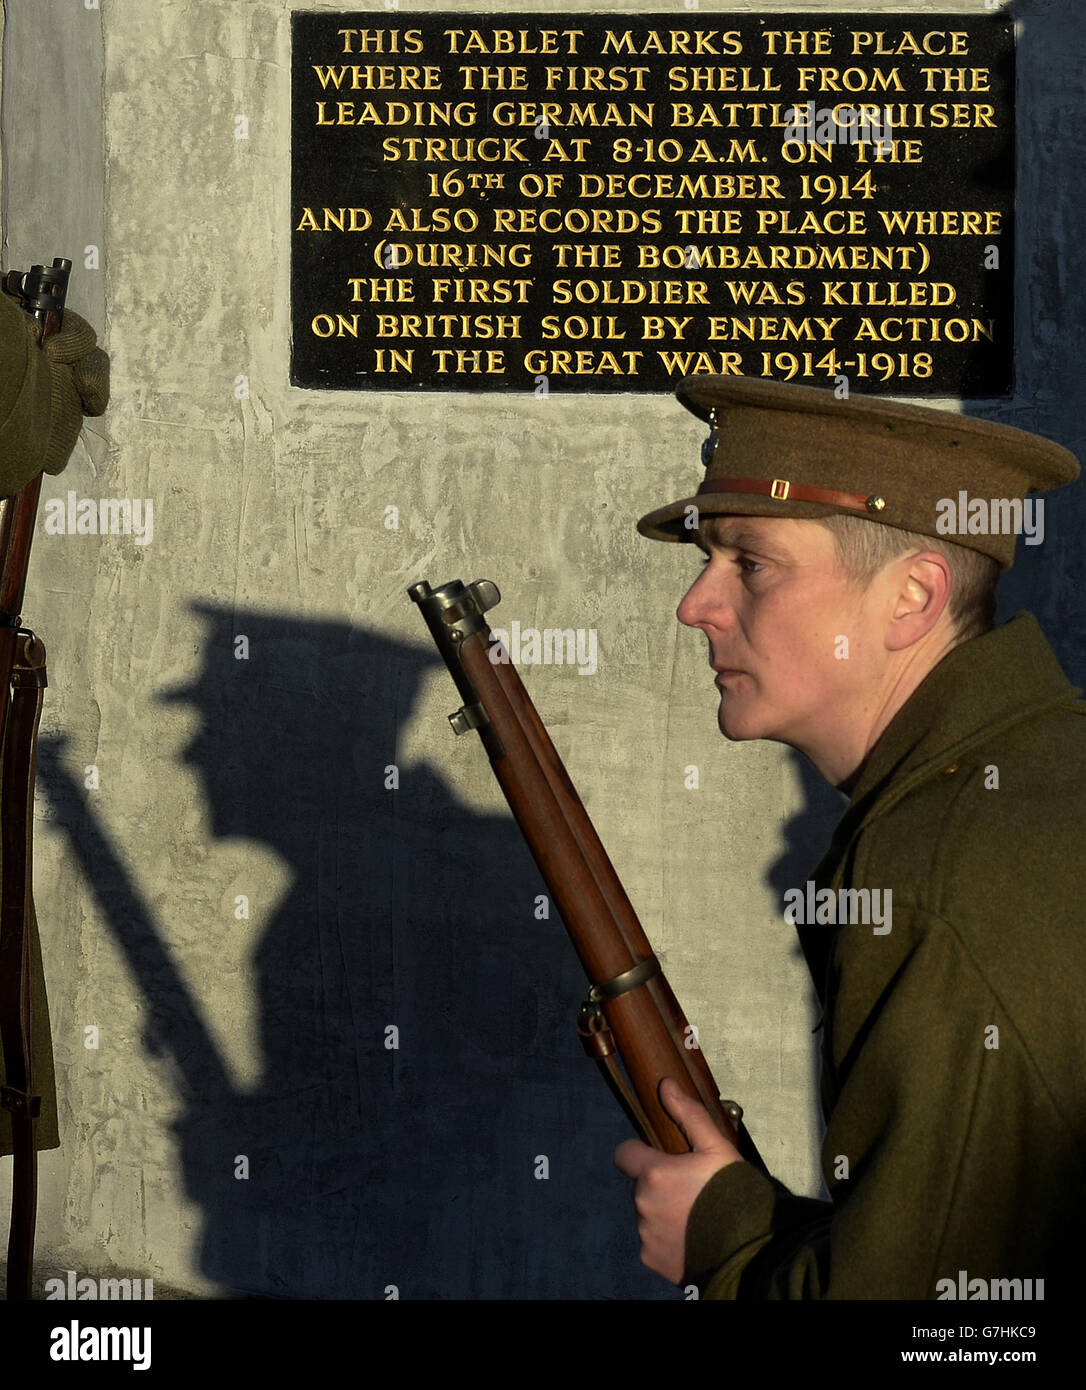 Die Gedenkgesellschaft 18. Bataillon Durham Leichte Infanterie an der Gedenktafel in Hartlepool, da die Stadt durch die deutsche Bombardierung der Nordostküste 1914 verwüstet wird, erinnert an den 100. Jahrestag des Angriffs. Stockfoto